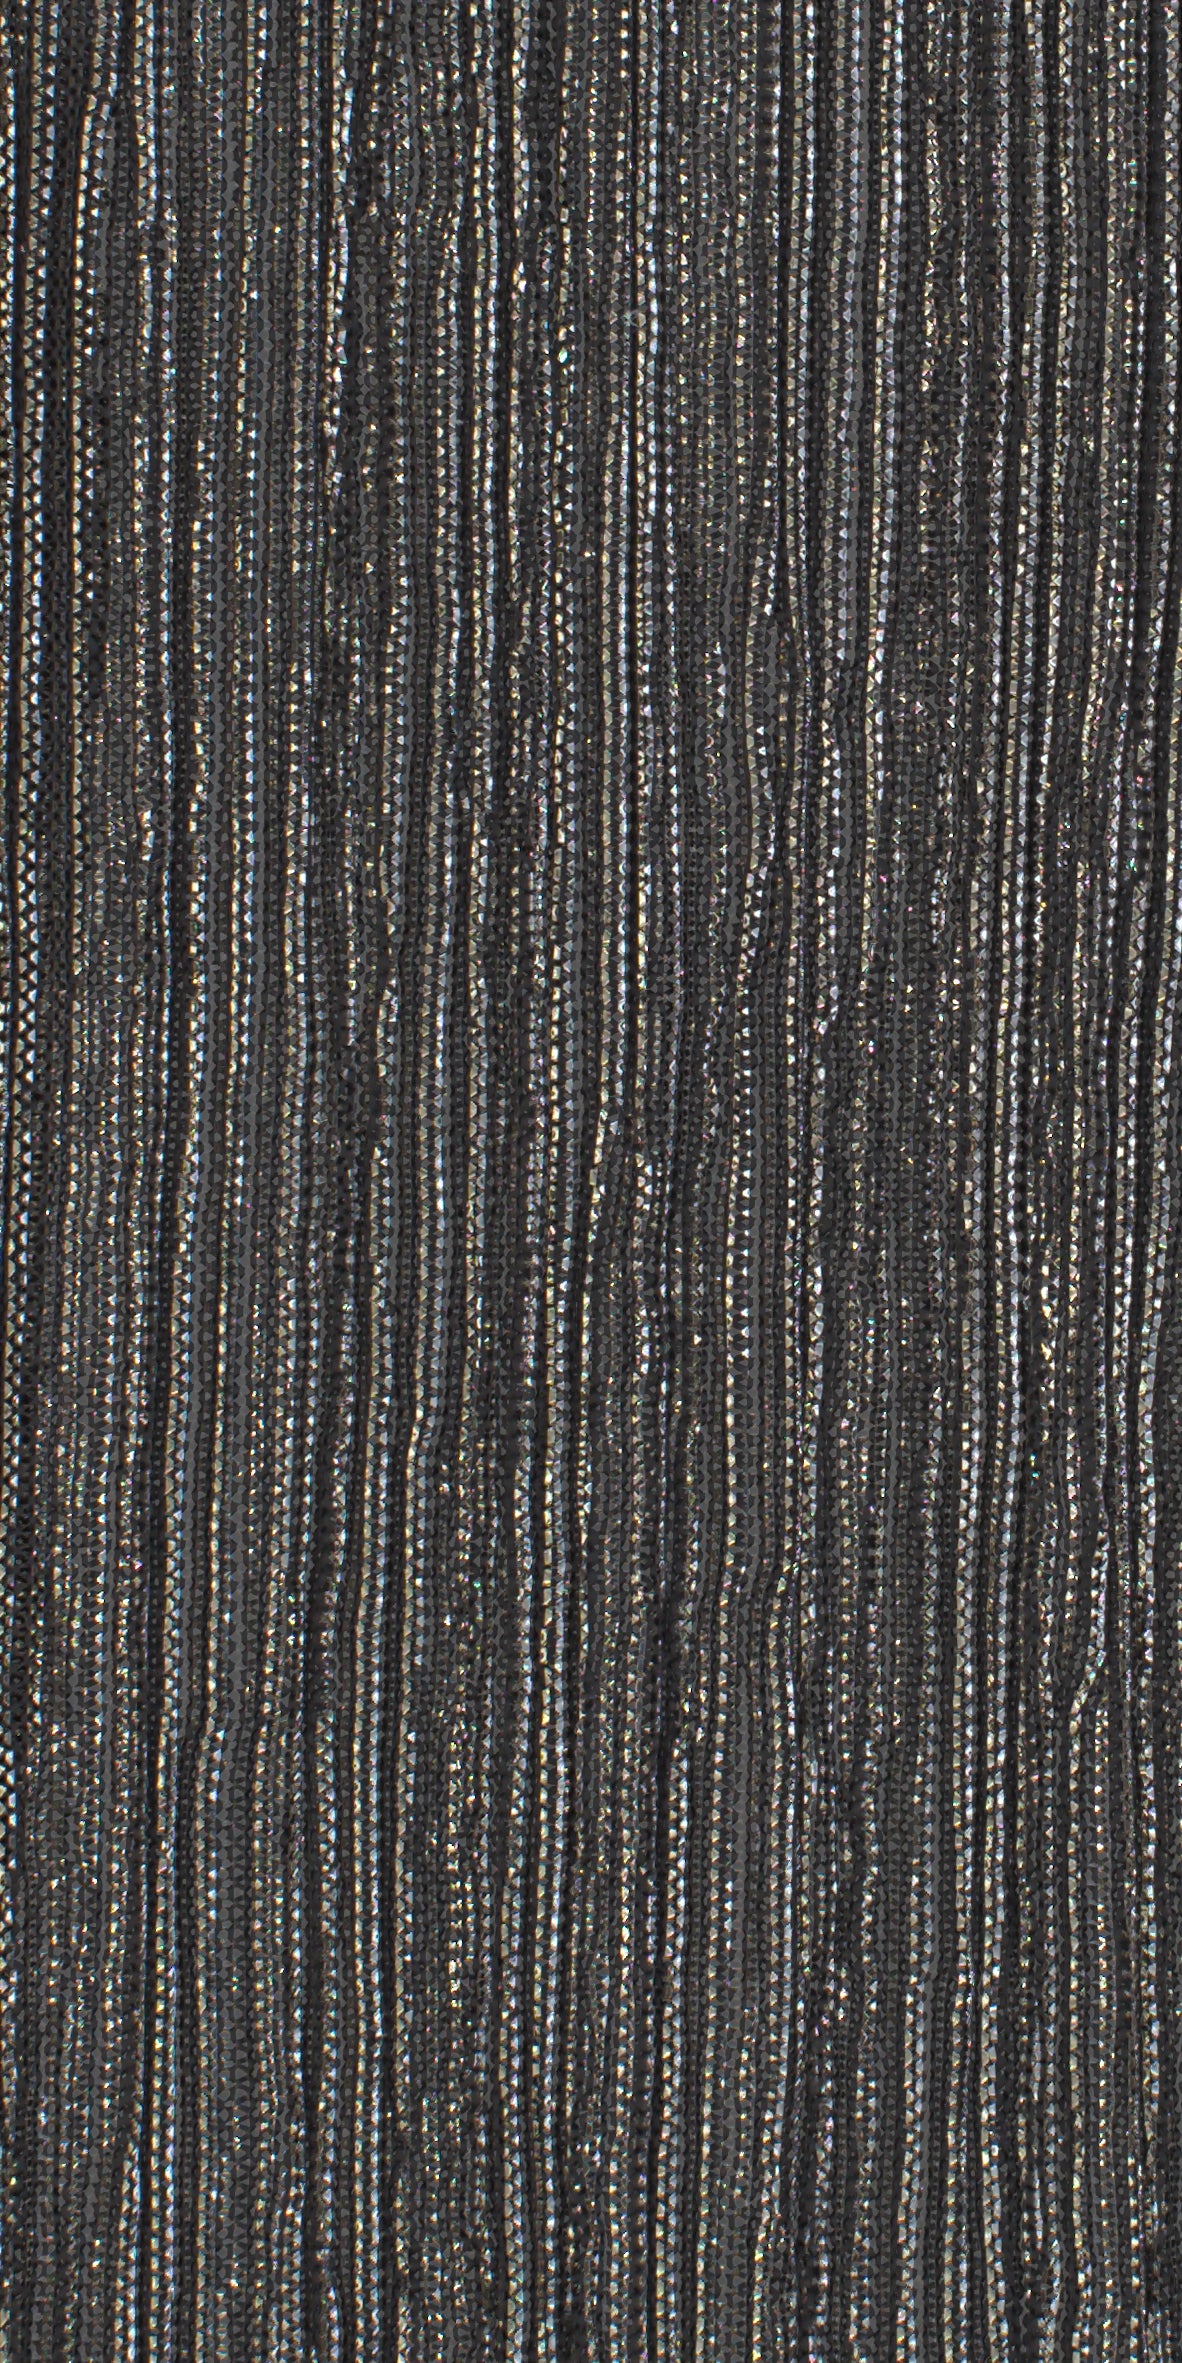 12006-02 Gold Black Metallic Pleat Plain Dyed Blend 126g/yd 56" black blend gold knit metallic plain dyed pleat ppl new Metallic, Pleat - knit fabric - woven fabric - fabric company - fabric wholesale - fabric b2b - fabric factory - high quality fabric - hong kong fabric - fabric hk - acetate fabric - cotton fabric - linen fabric - metallic fabric - nylon fabric - polyester fabric - spandex fabric - chun wing hing - cwh hk - fabric worldwide ship - 針織布 - 梳織布 - 布料公司- 布料批發 - 香港布料 - 秦榮興